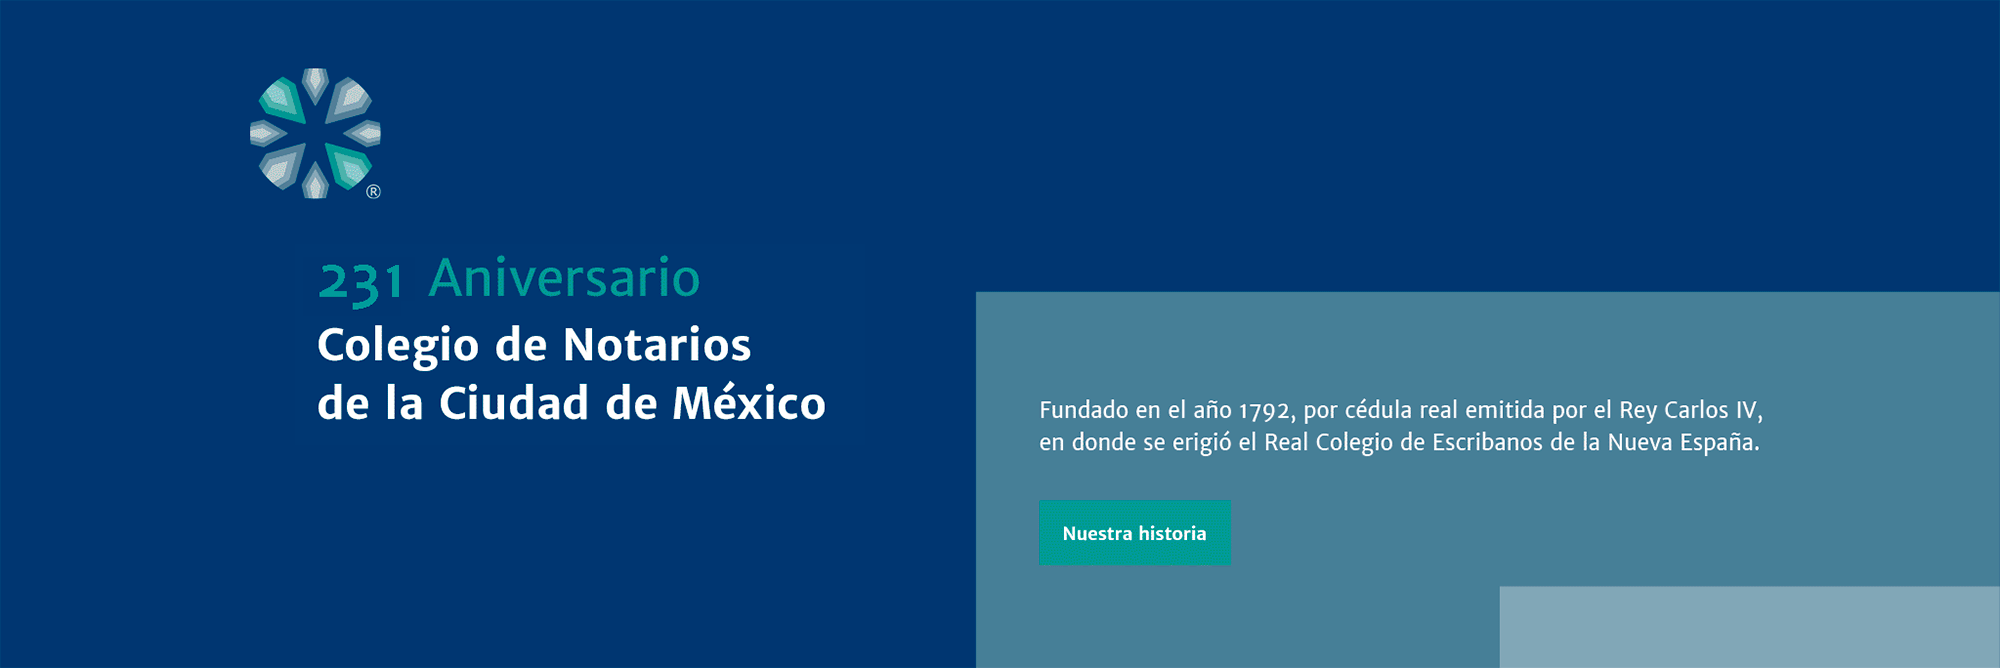 228 Aniversario Colegio de Notarios de la Ciudad de México